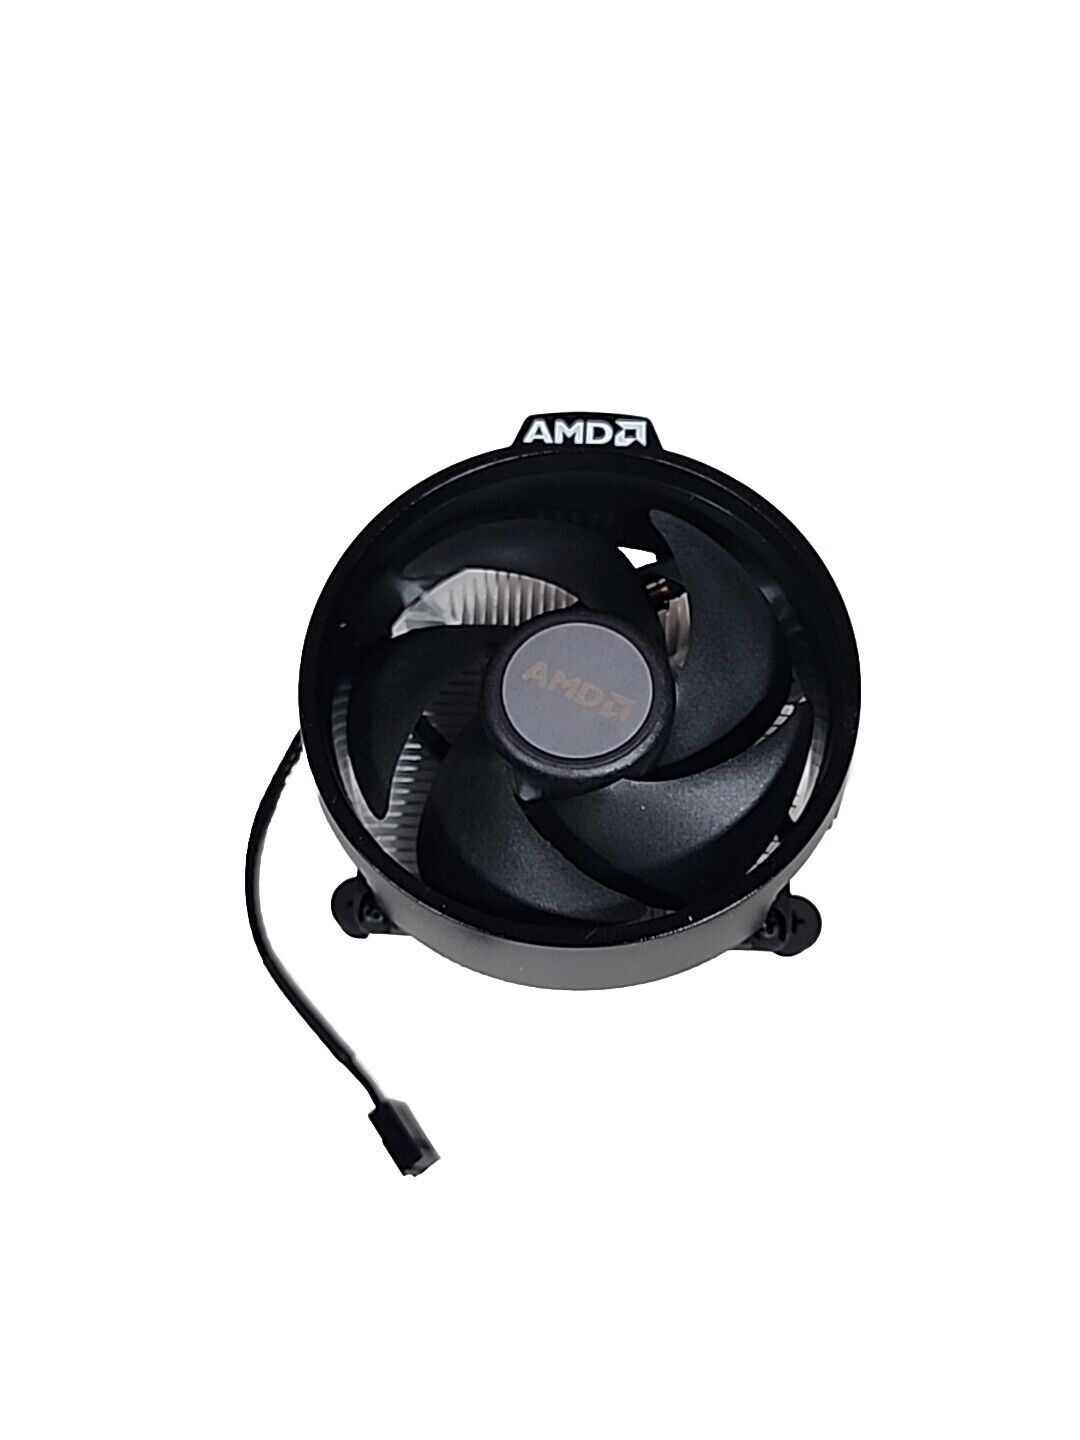 AMD Ryzen  Processor Heatsink Cooling Fan Processor Socket AM4,712-000046 